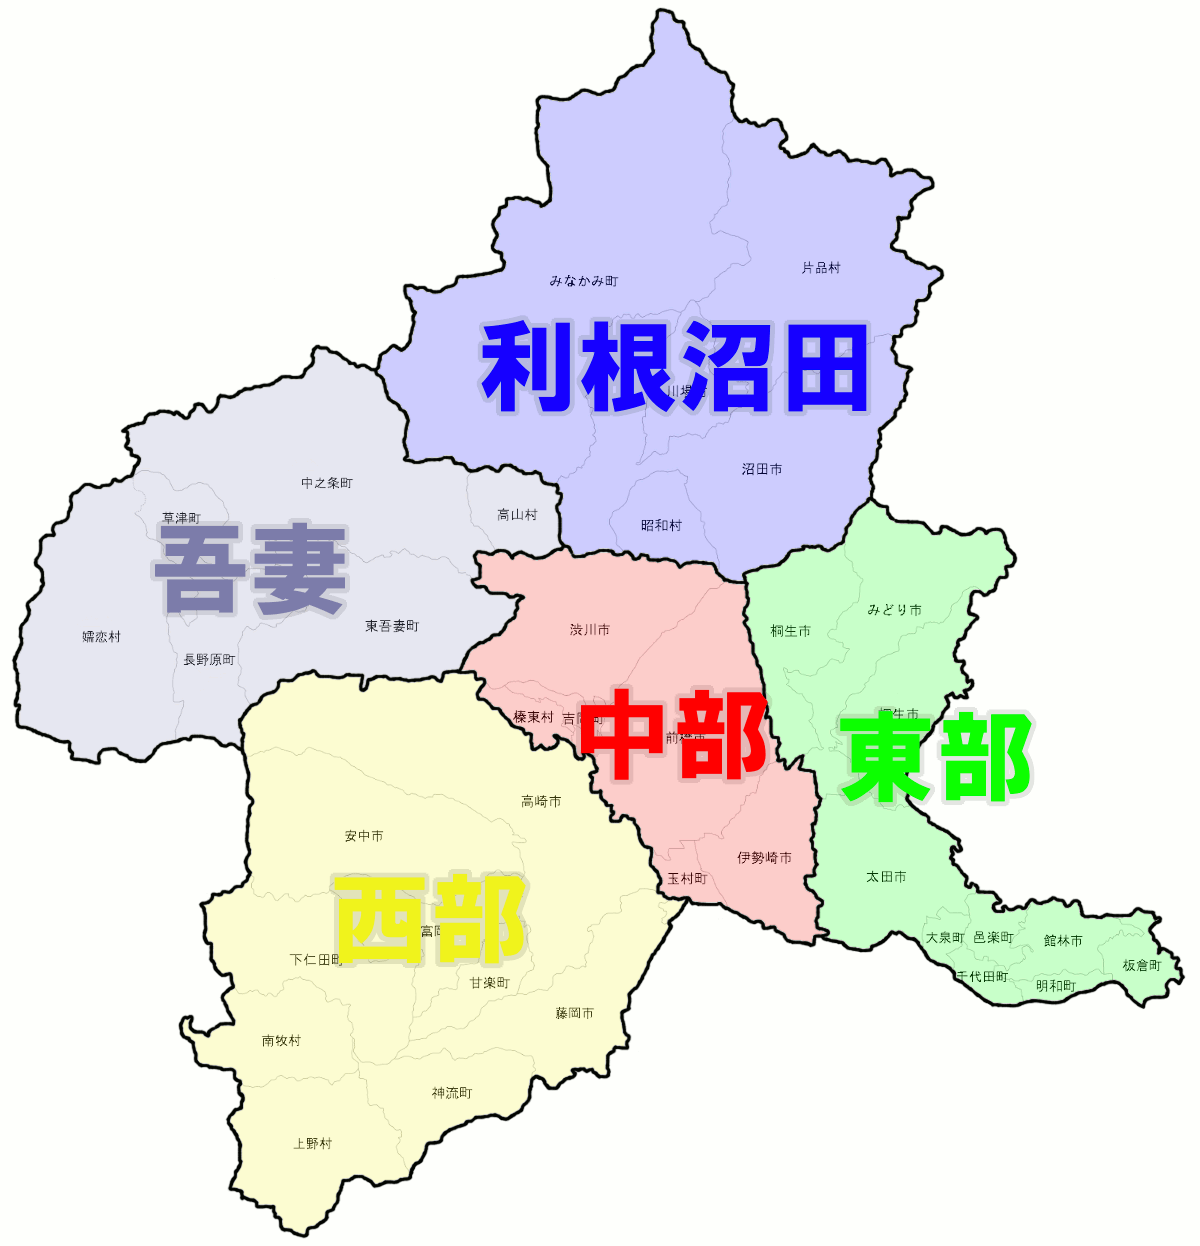 気象庁による群馬県地域区分の地図